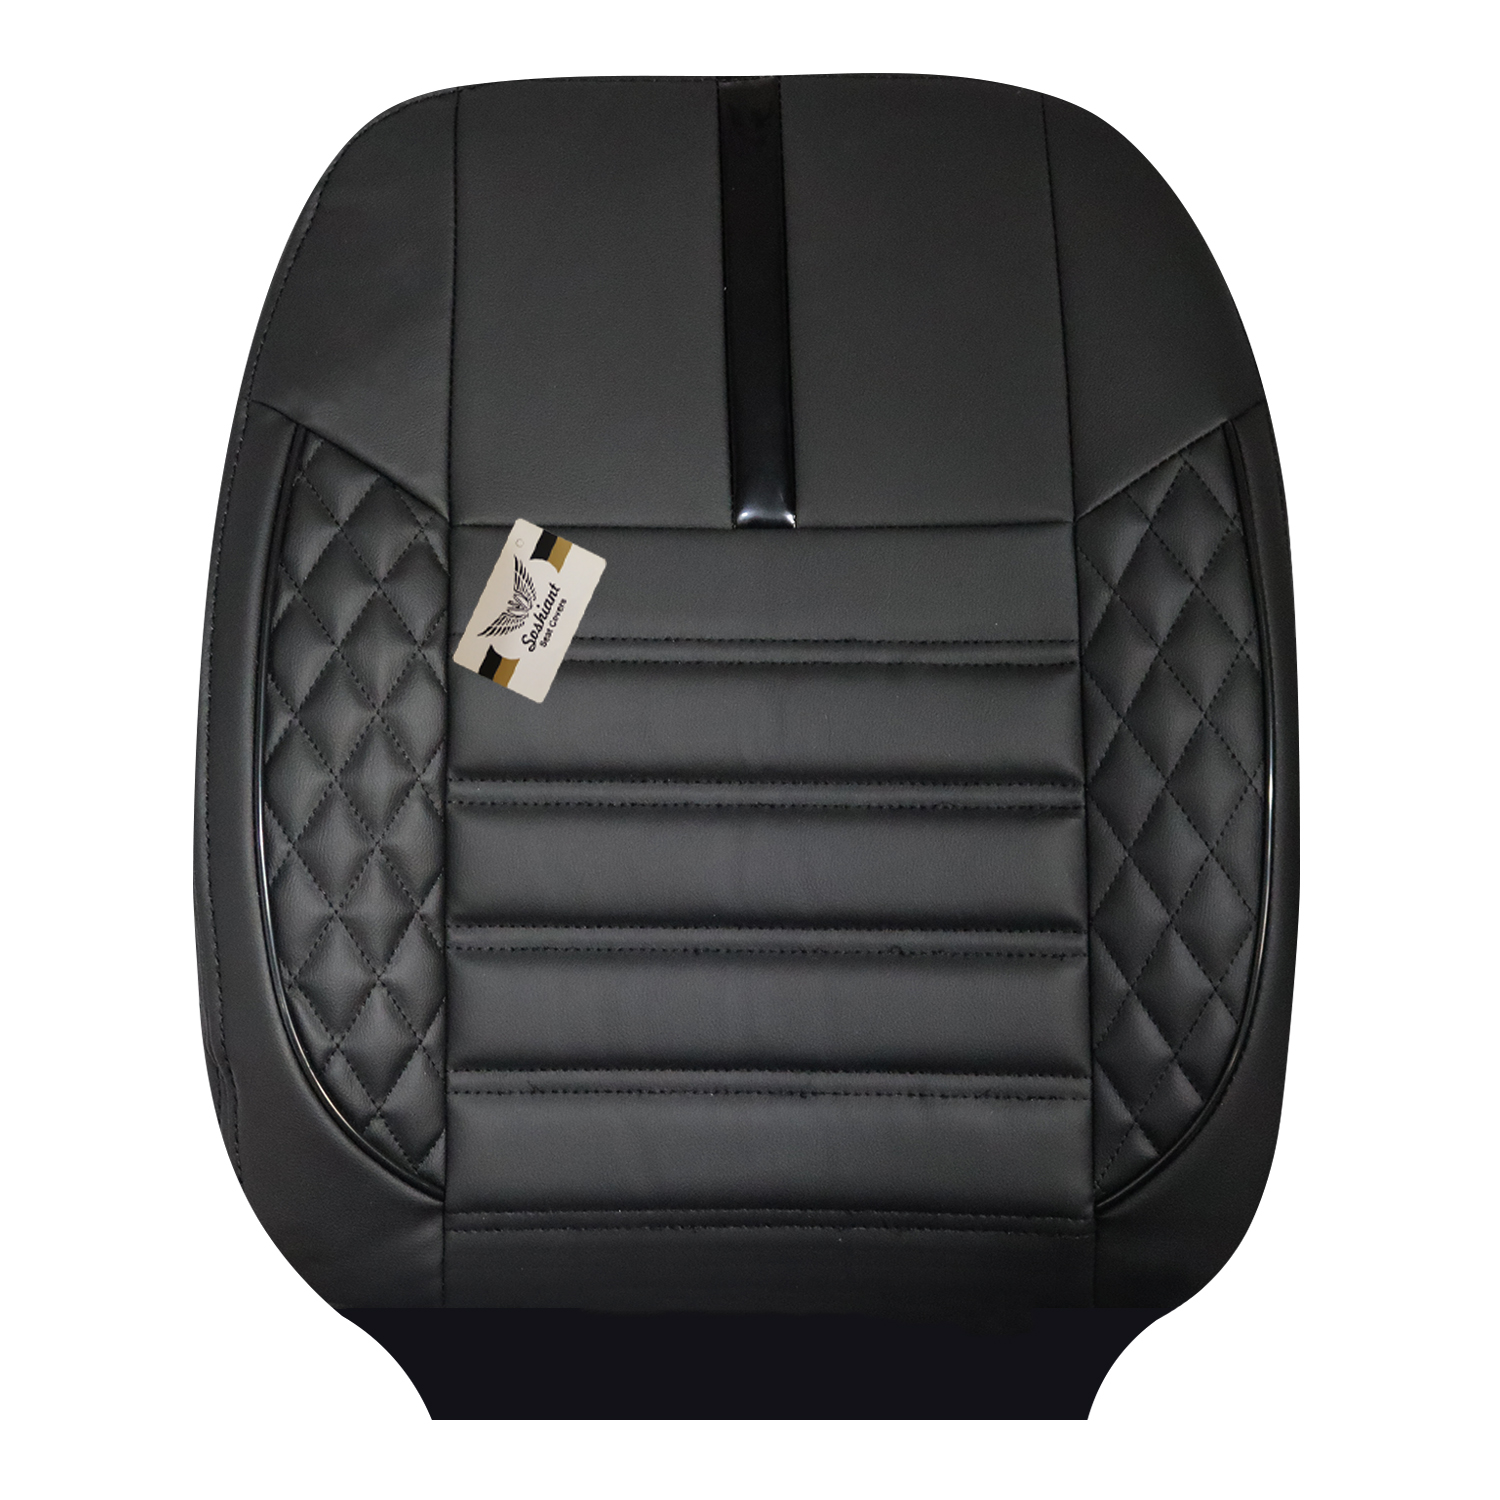 نکته خرید - قیمت روز روکش صندلی خودرو سوشیانت مدل آوا مناسب برای پژو 207 خرید